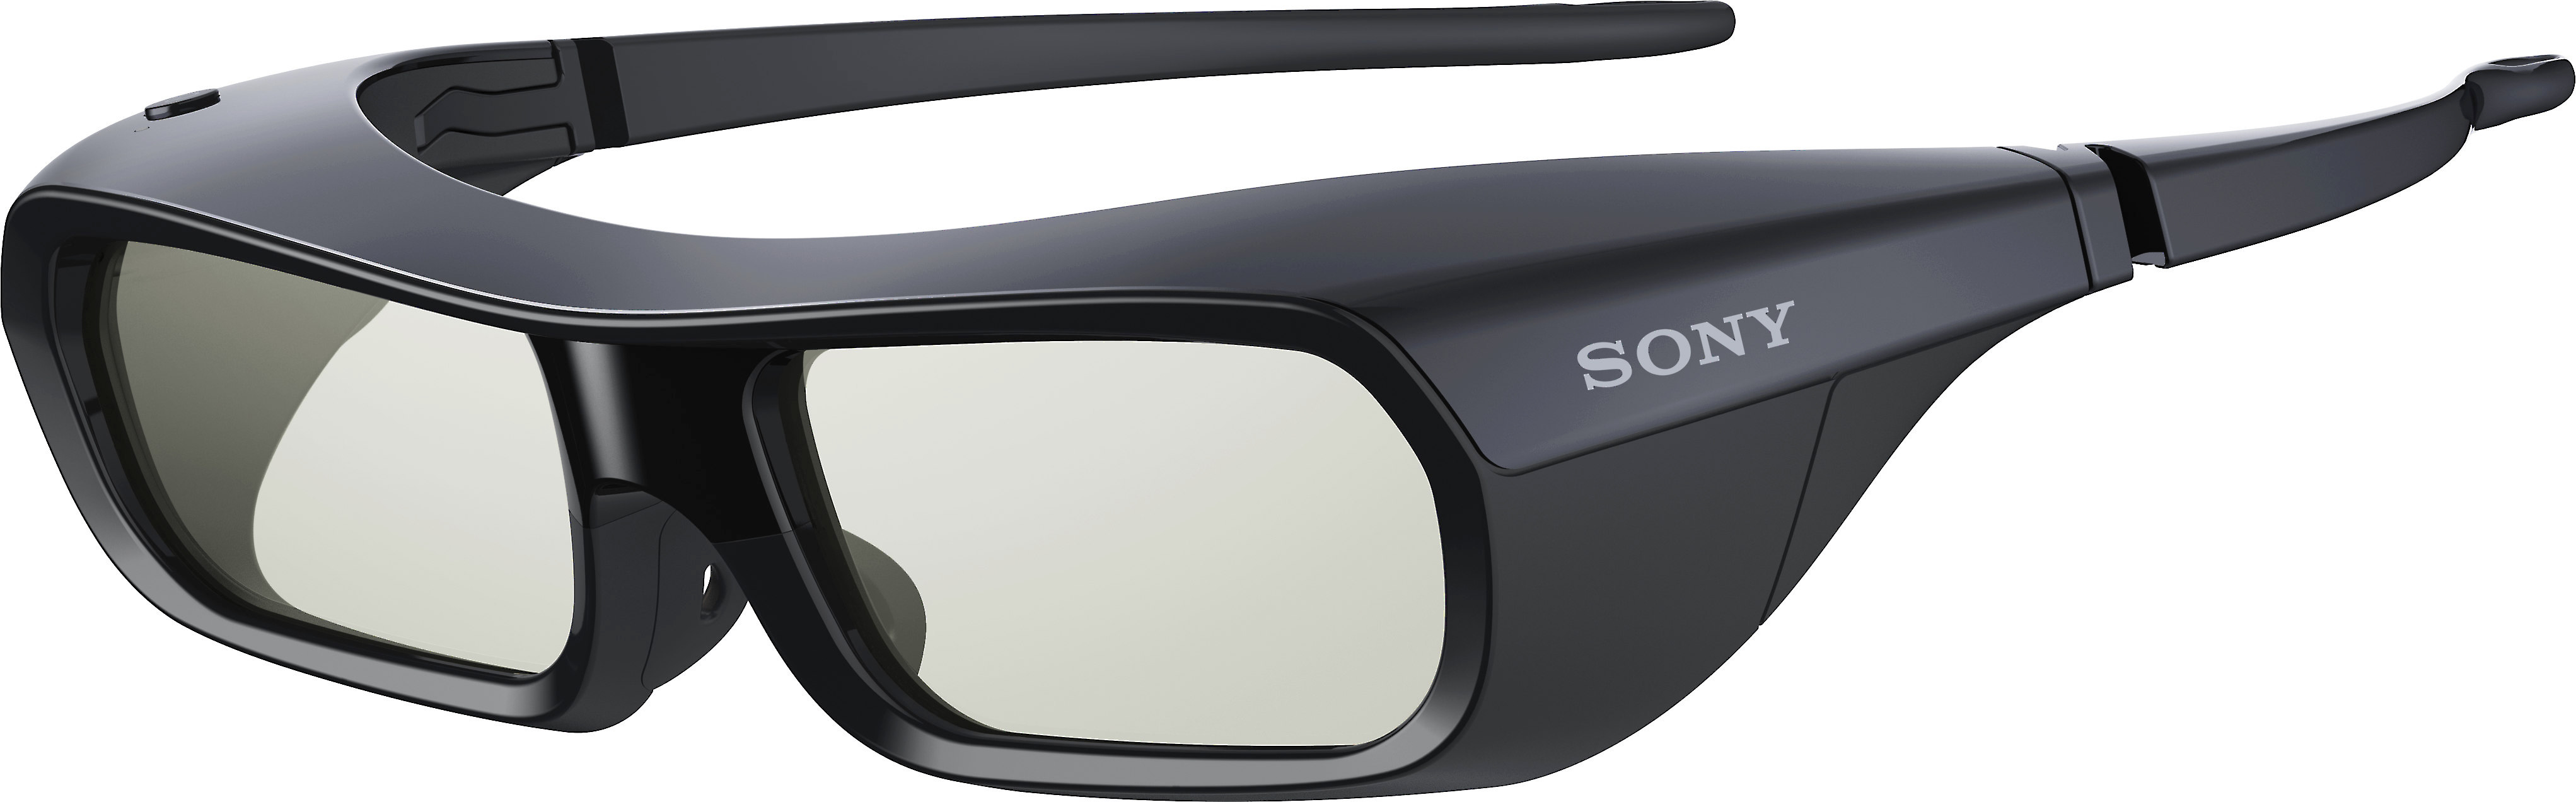 2X New Original Black Sony TDG-BR250 Active Shutter 3D Glasses for Bravia HDTV